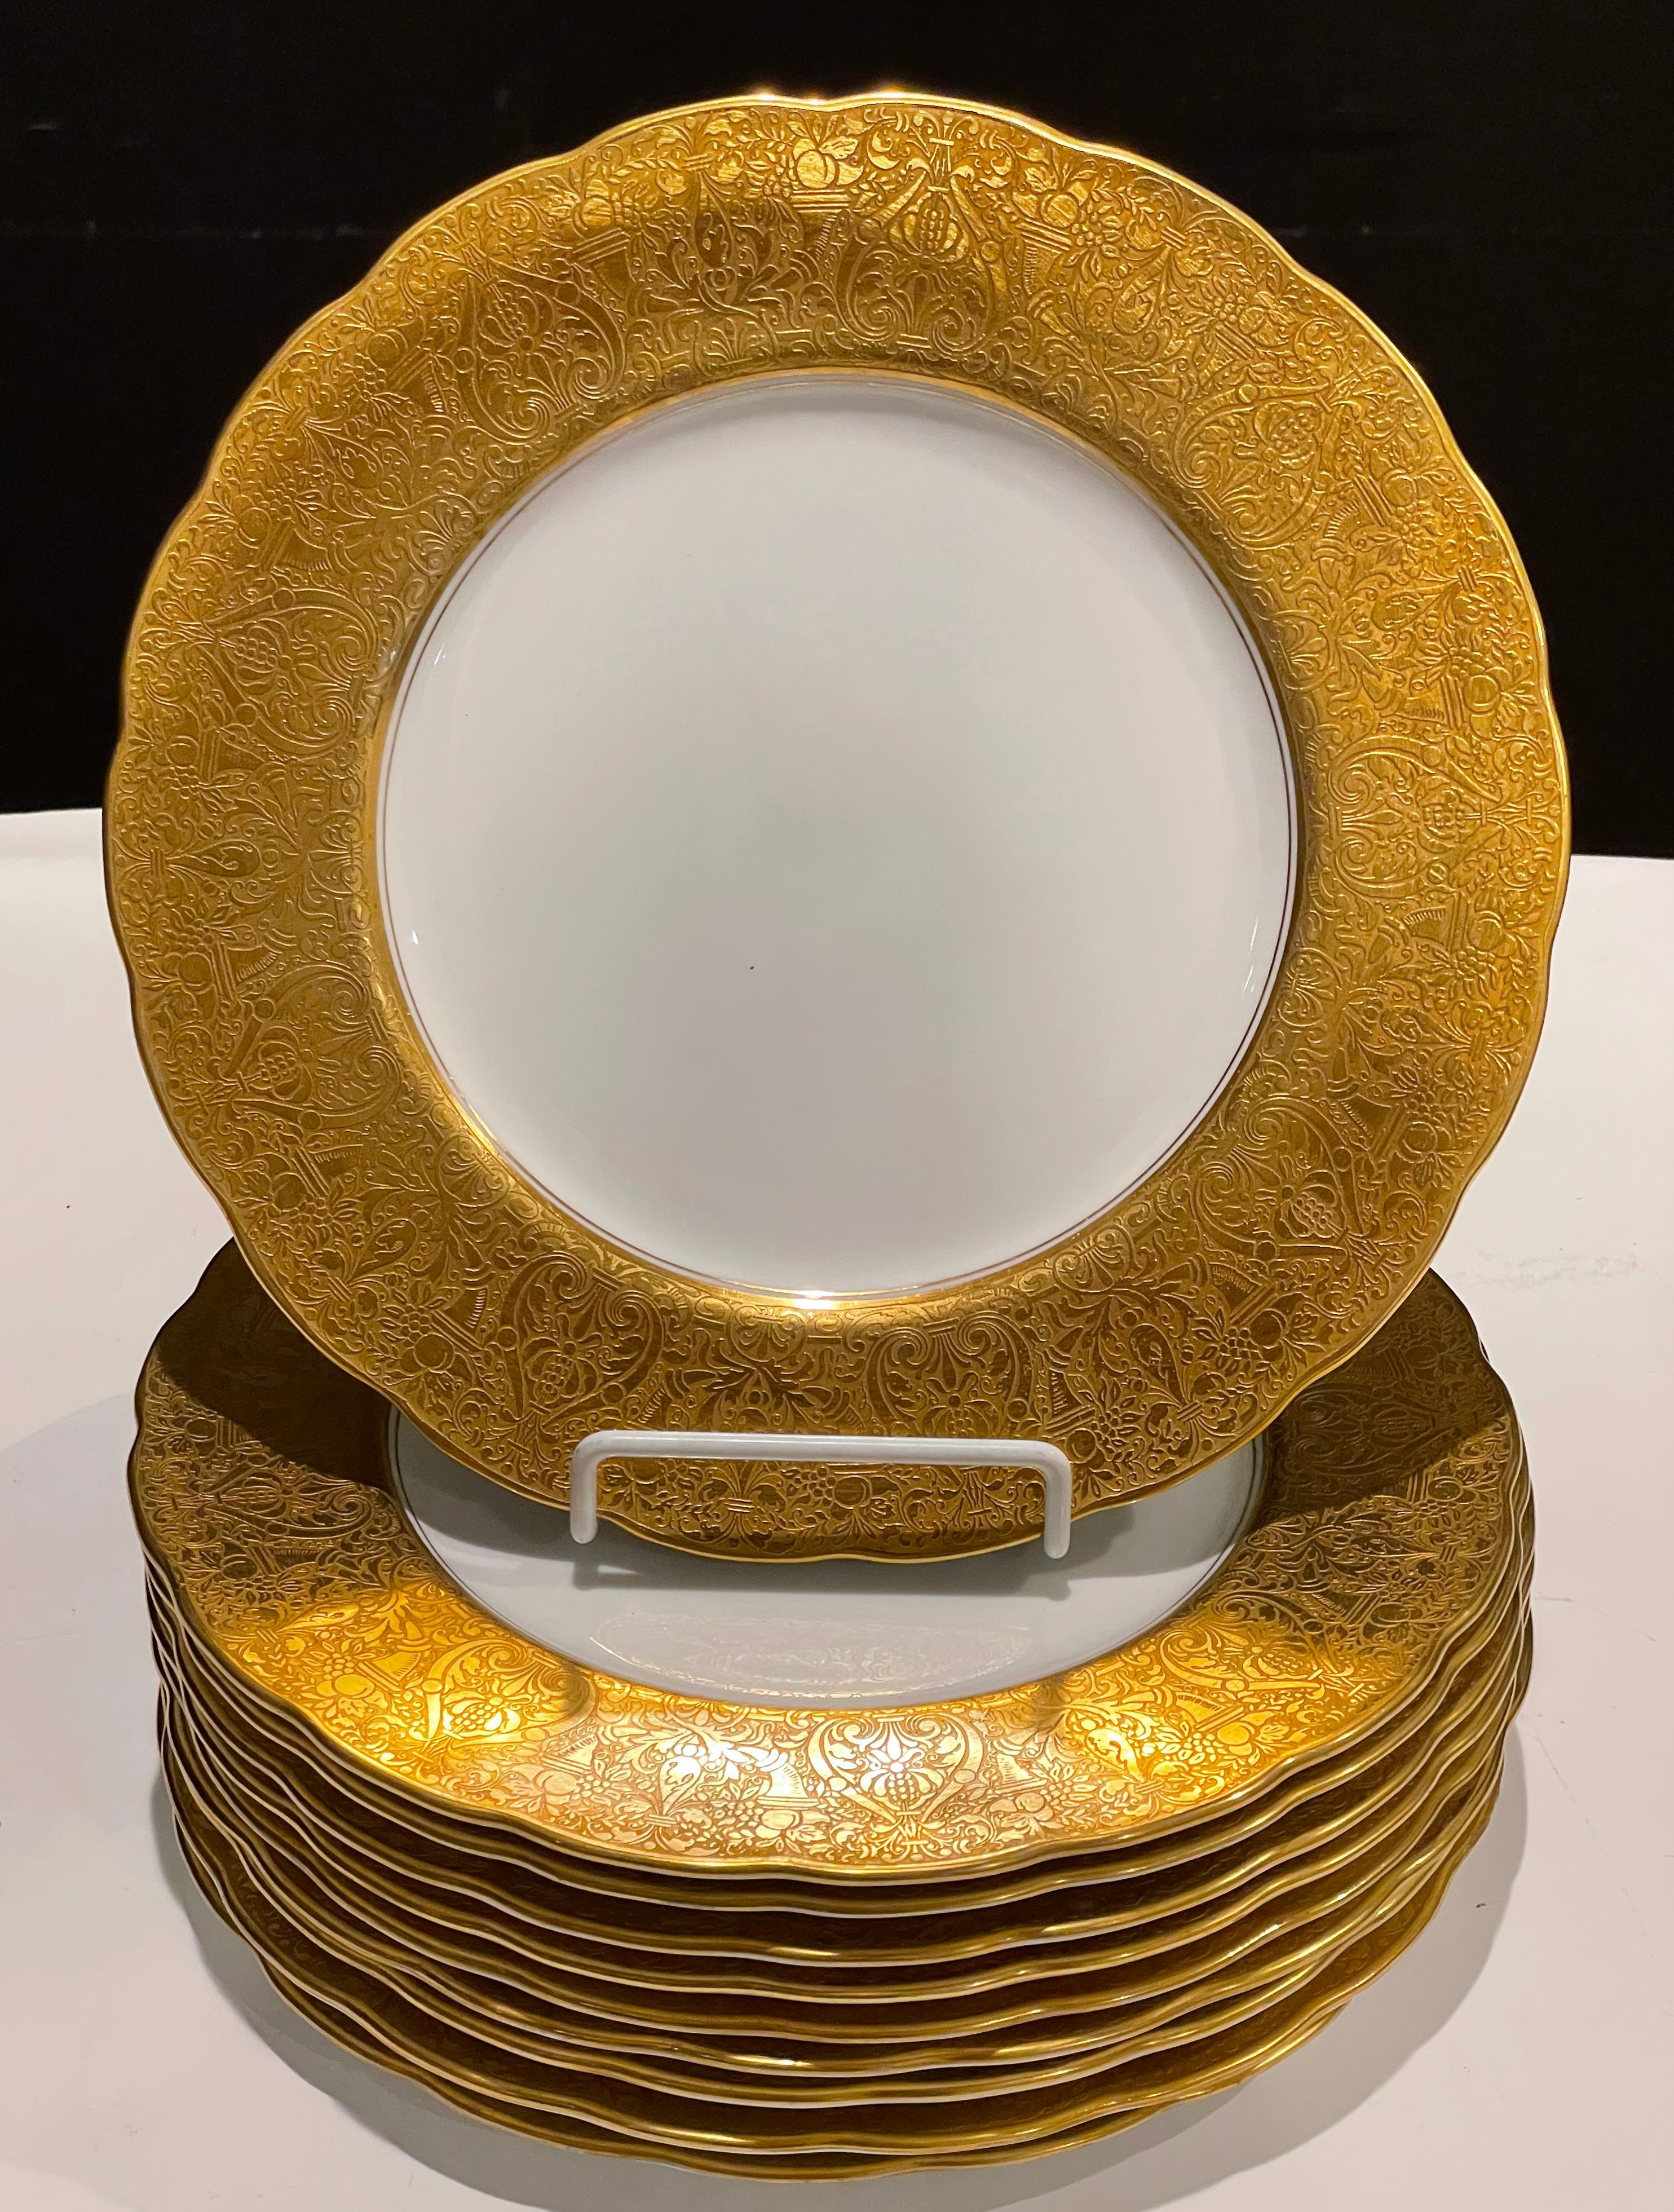 Satz von 10 Tellern aus stark vergoldetem Porzellan von Crescent & Sons, vertrieben von Ovington Bros. Co. New York. Weißes Porzellan mit großem vergoldetem Rand mit Füllhorn und Blumenmotiven.